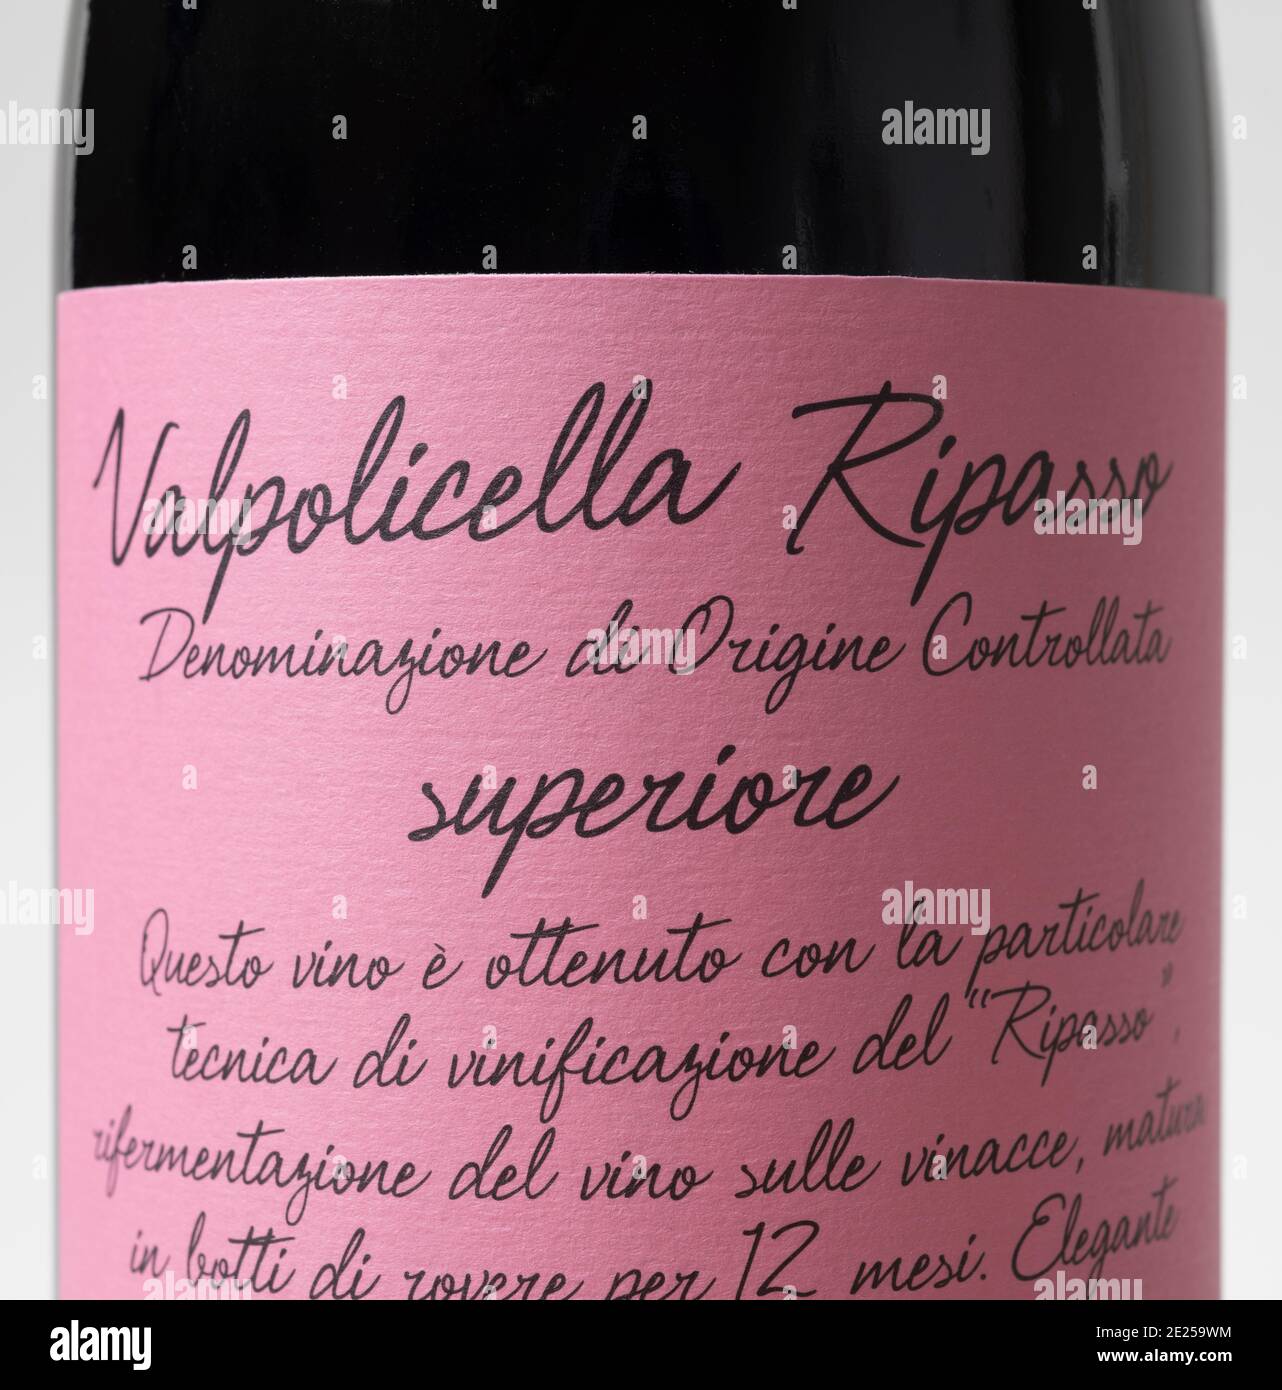 Valpolicella Ripasso 2018 Villa Borghetti etiqueta de botella de vino tinto italiano Foto de stock